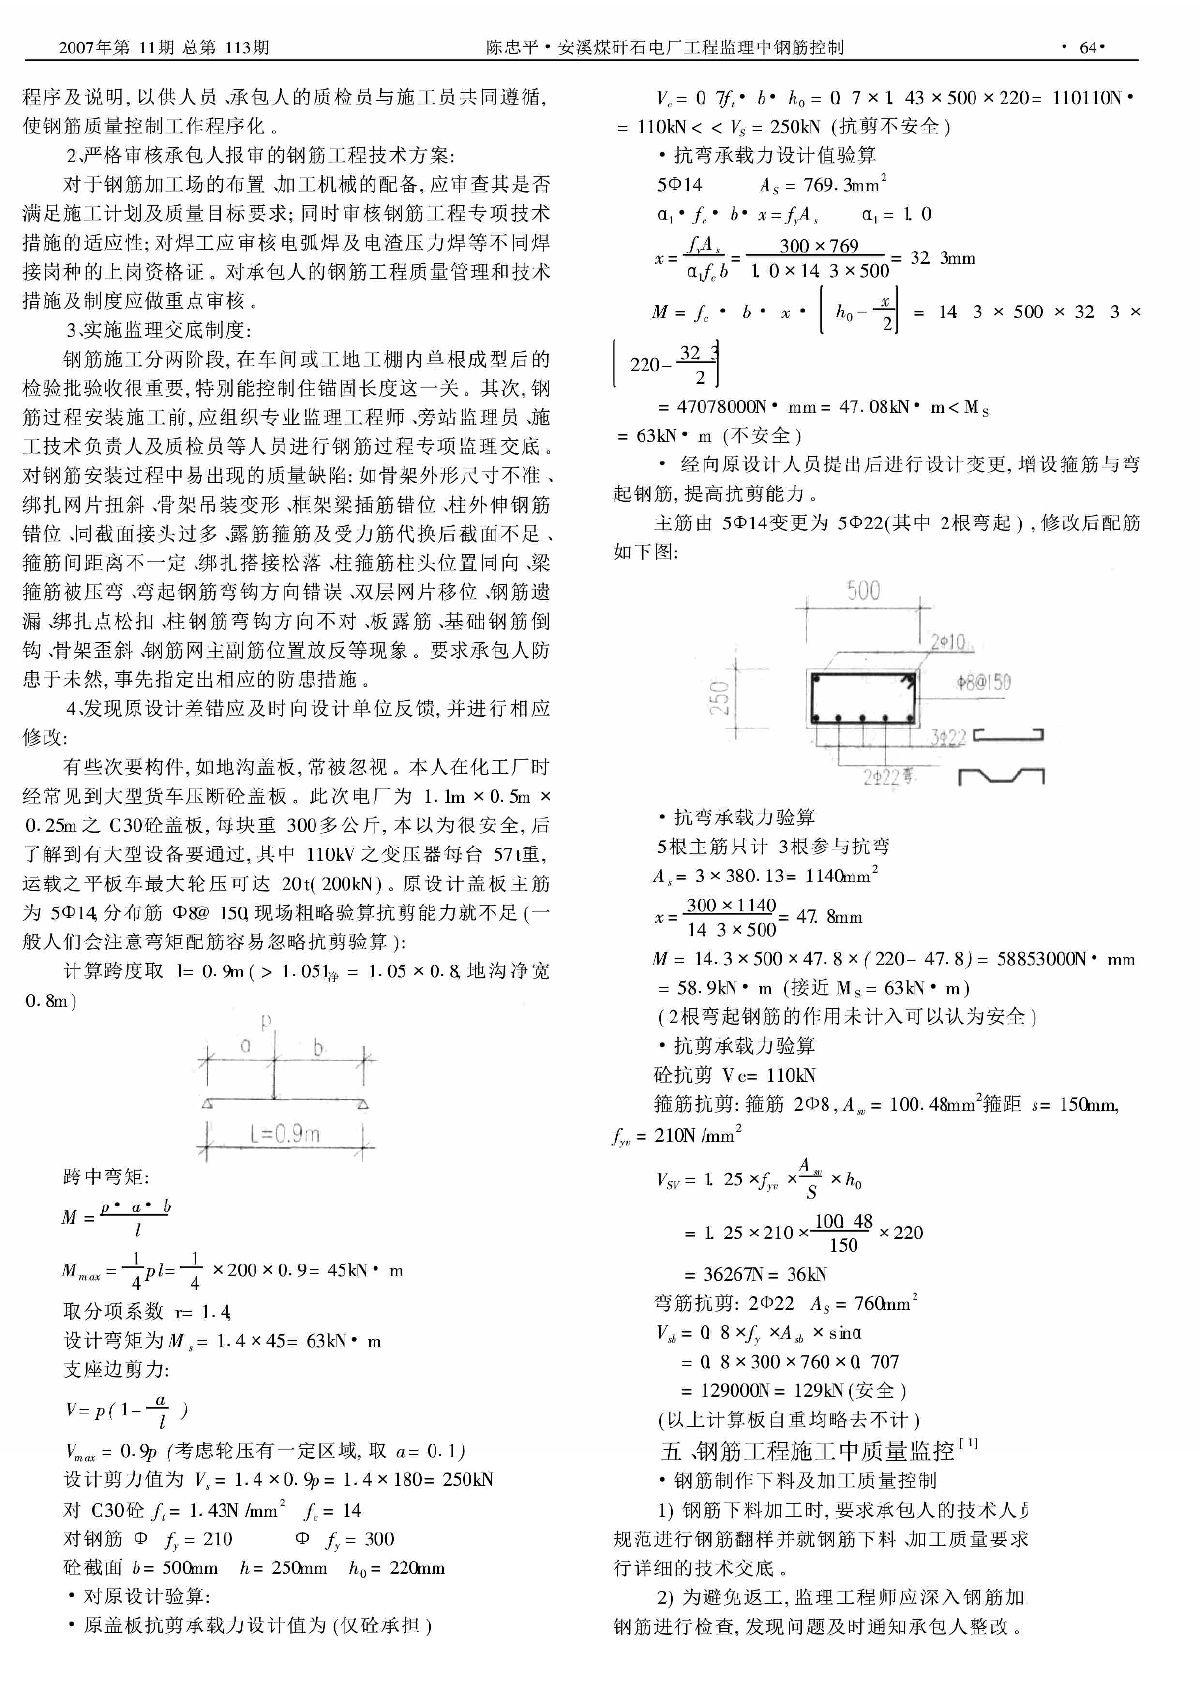 安溪煤矸石电厂工程监理中钢筋控制_陈忠平.pdf-图二